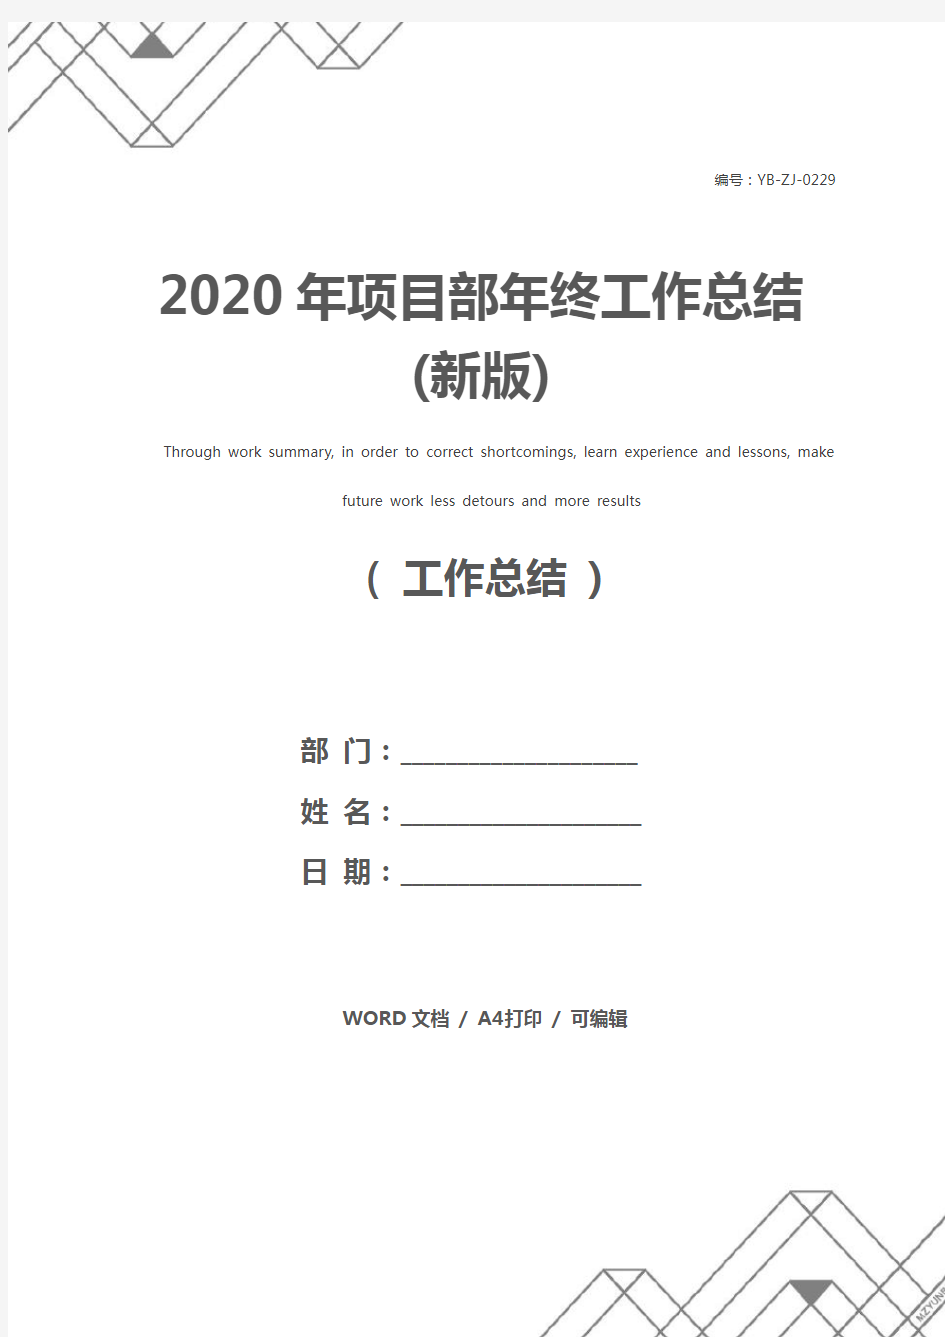 2020年项目部年终工作总结(新版)